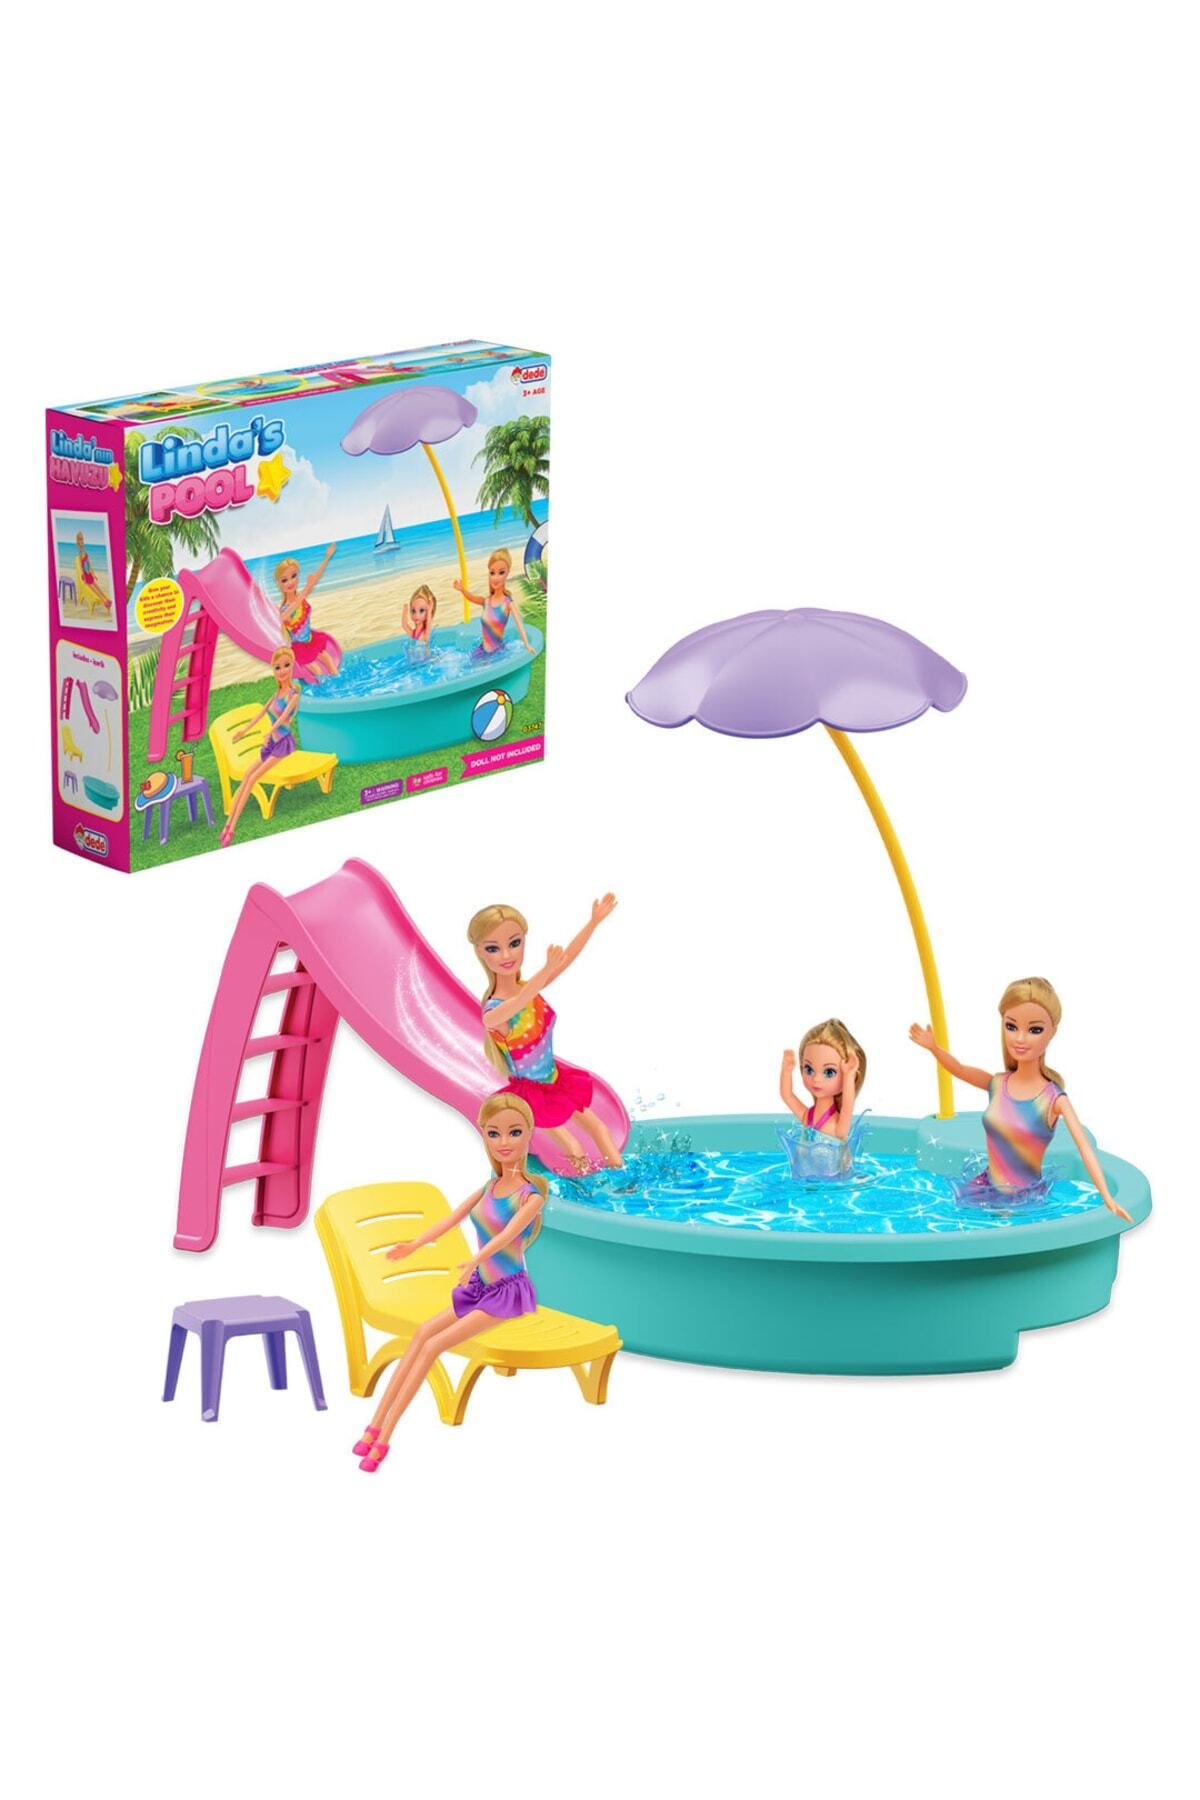 Doğan Oyuncak Dünyası Linda'nın Havuzu - Havuz Partisi Oyuncak - Havuz Partisi Seti - Barbie Havuz Seti